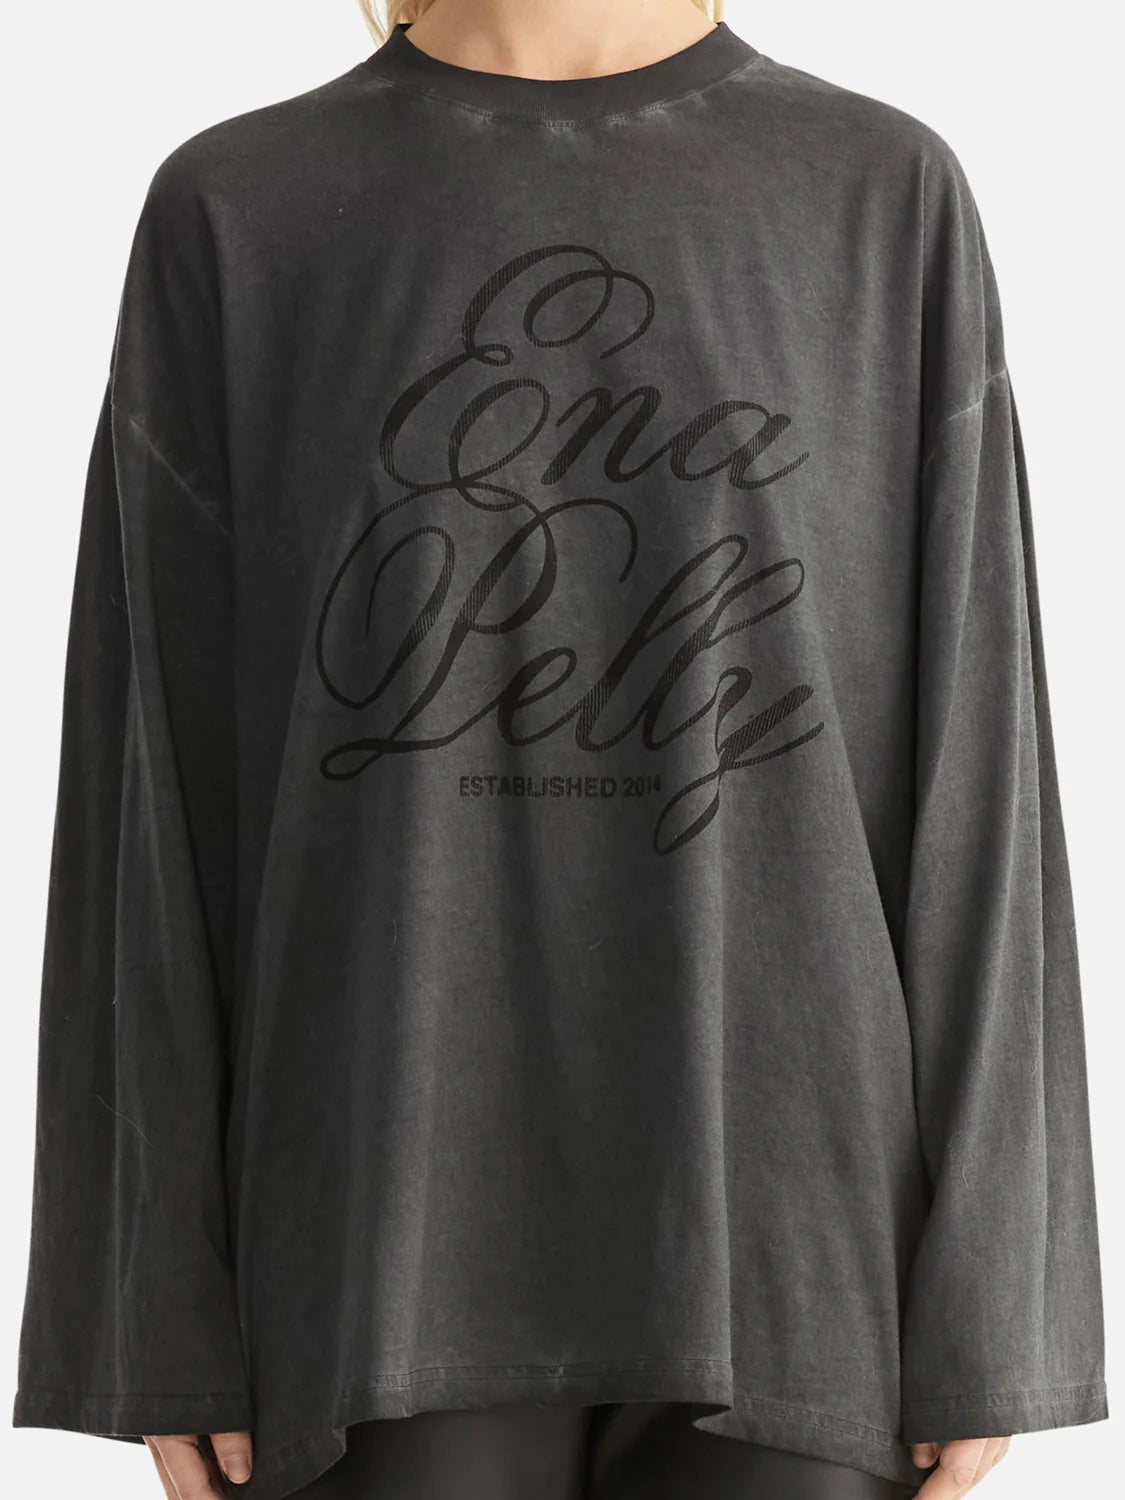 Zara Long Sleeve Tee - Calligraphy Charcoal